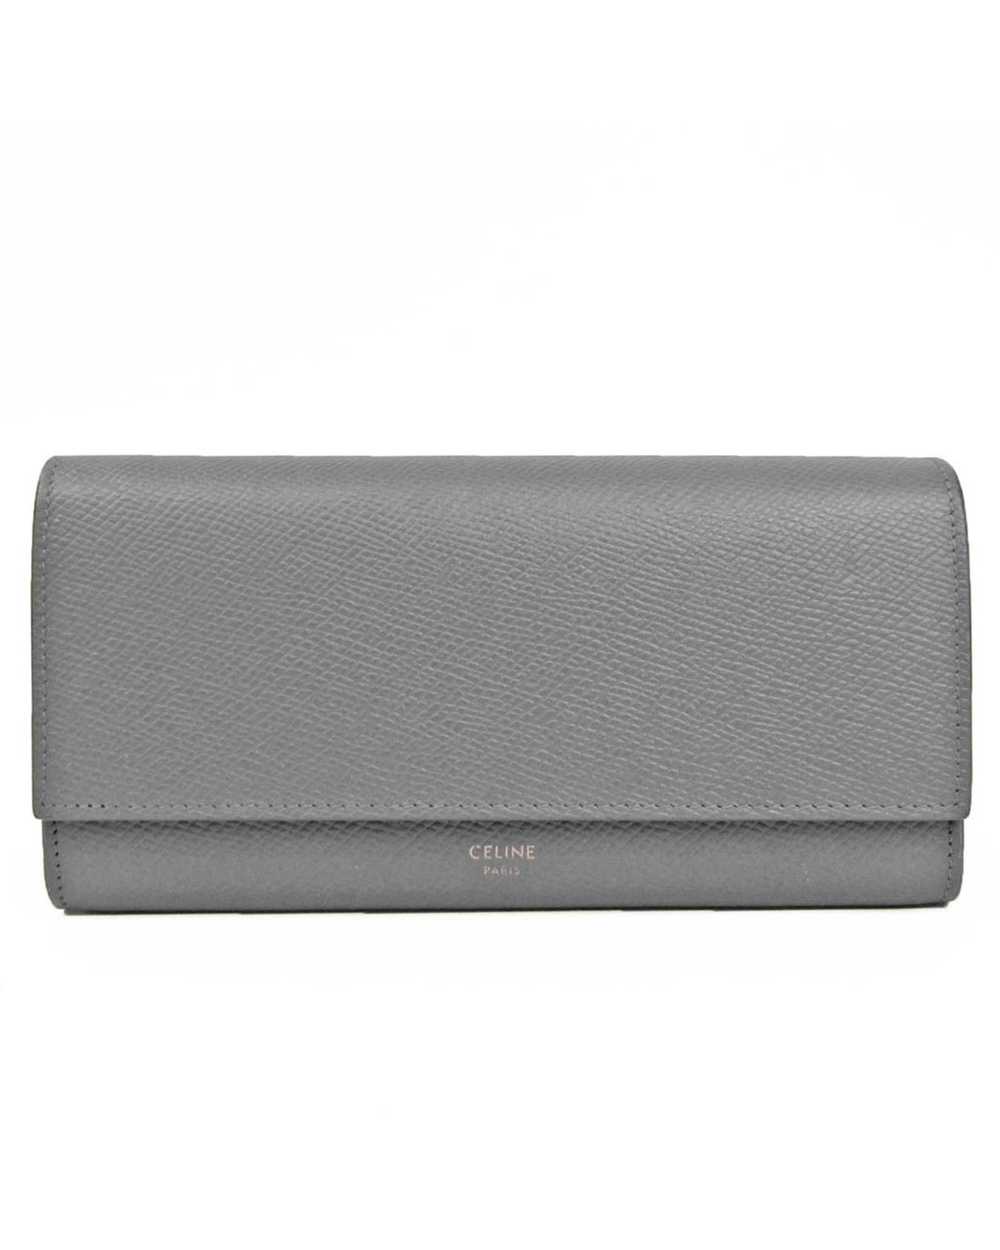 Celine Large Flap Wallet - image 1